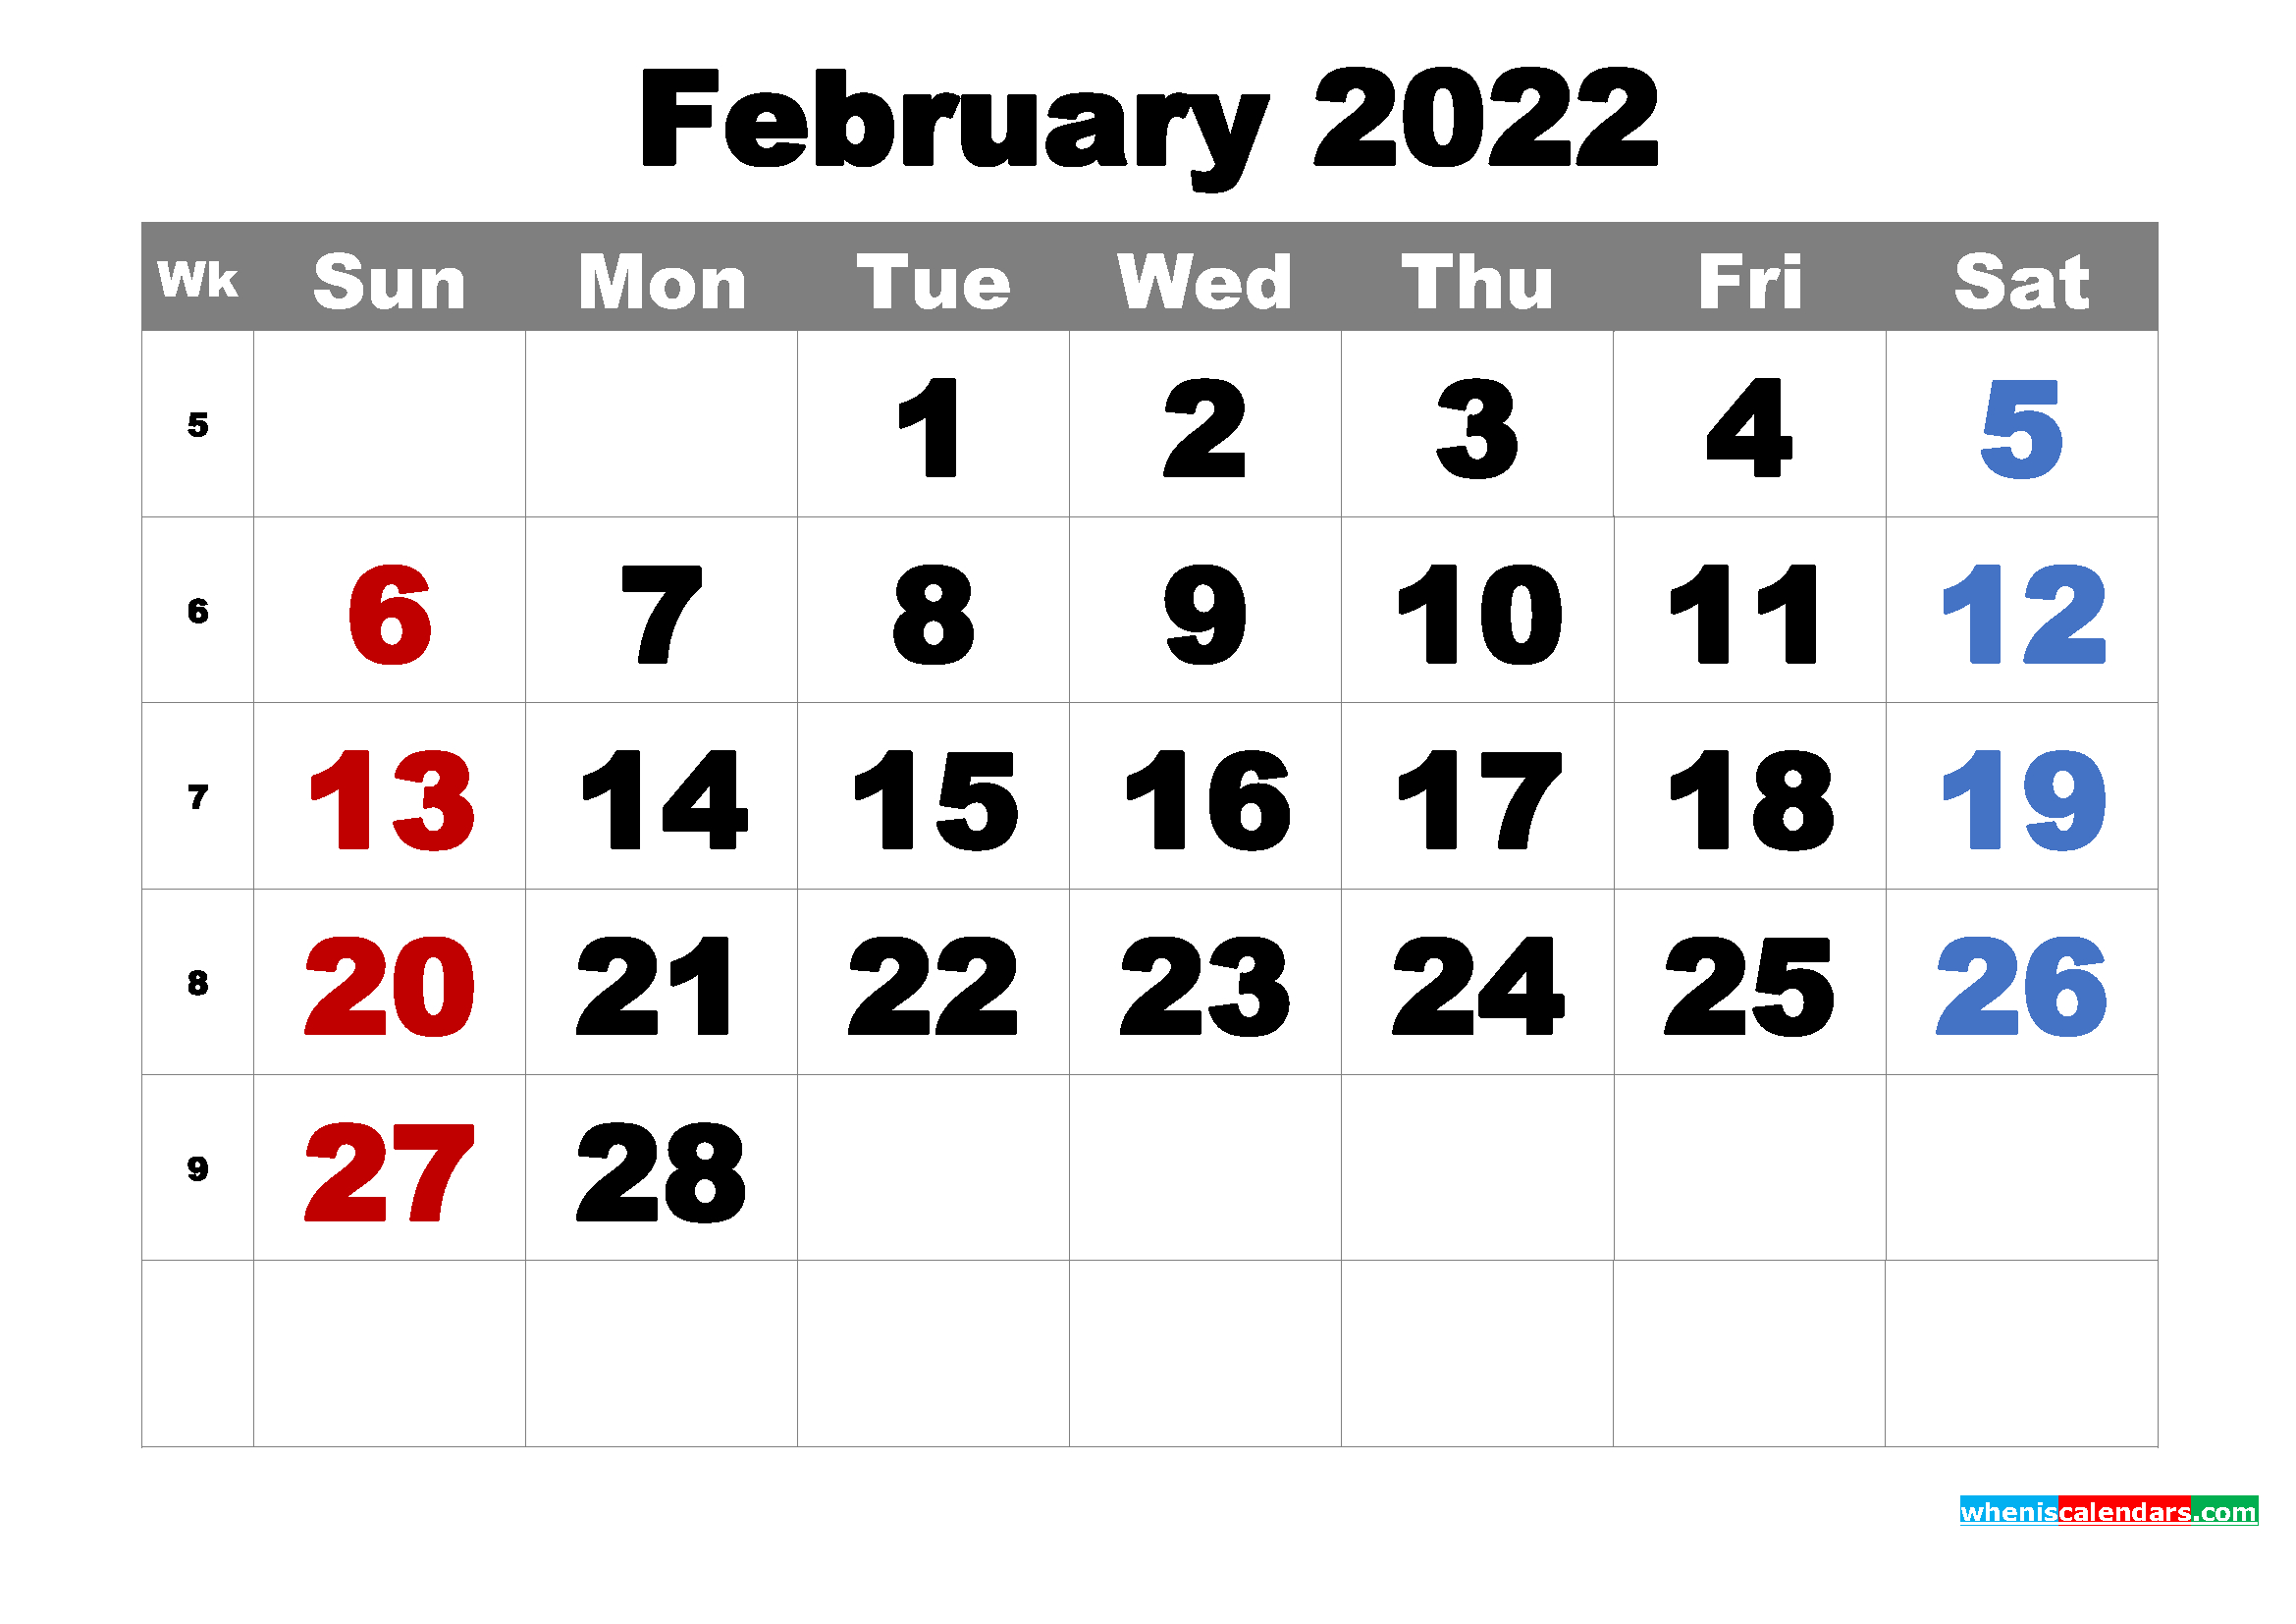 Take Calendar 2022 May Month